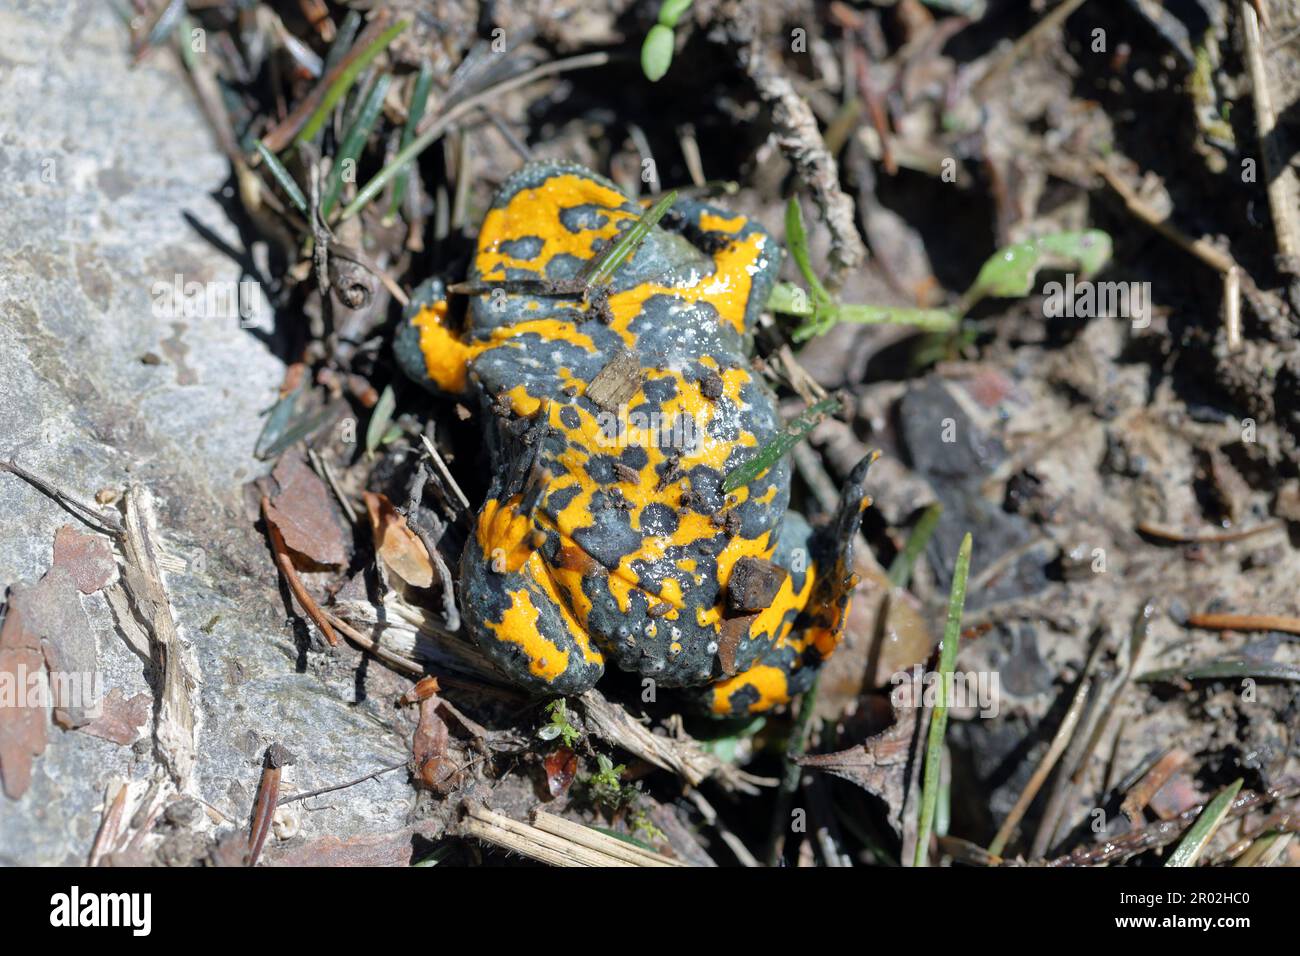 Toad dalle ventre gialle, Bombina variegata. Rare specie di anfibi in pericolo. Foto Stock